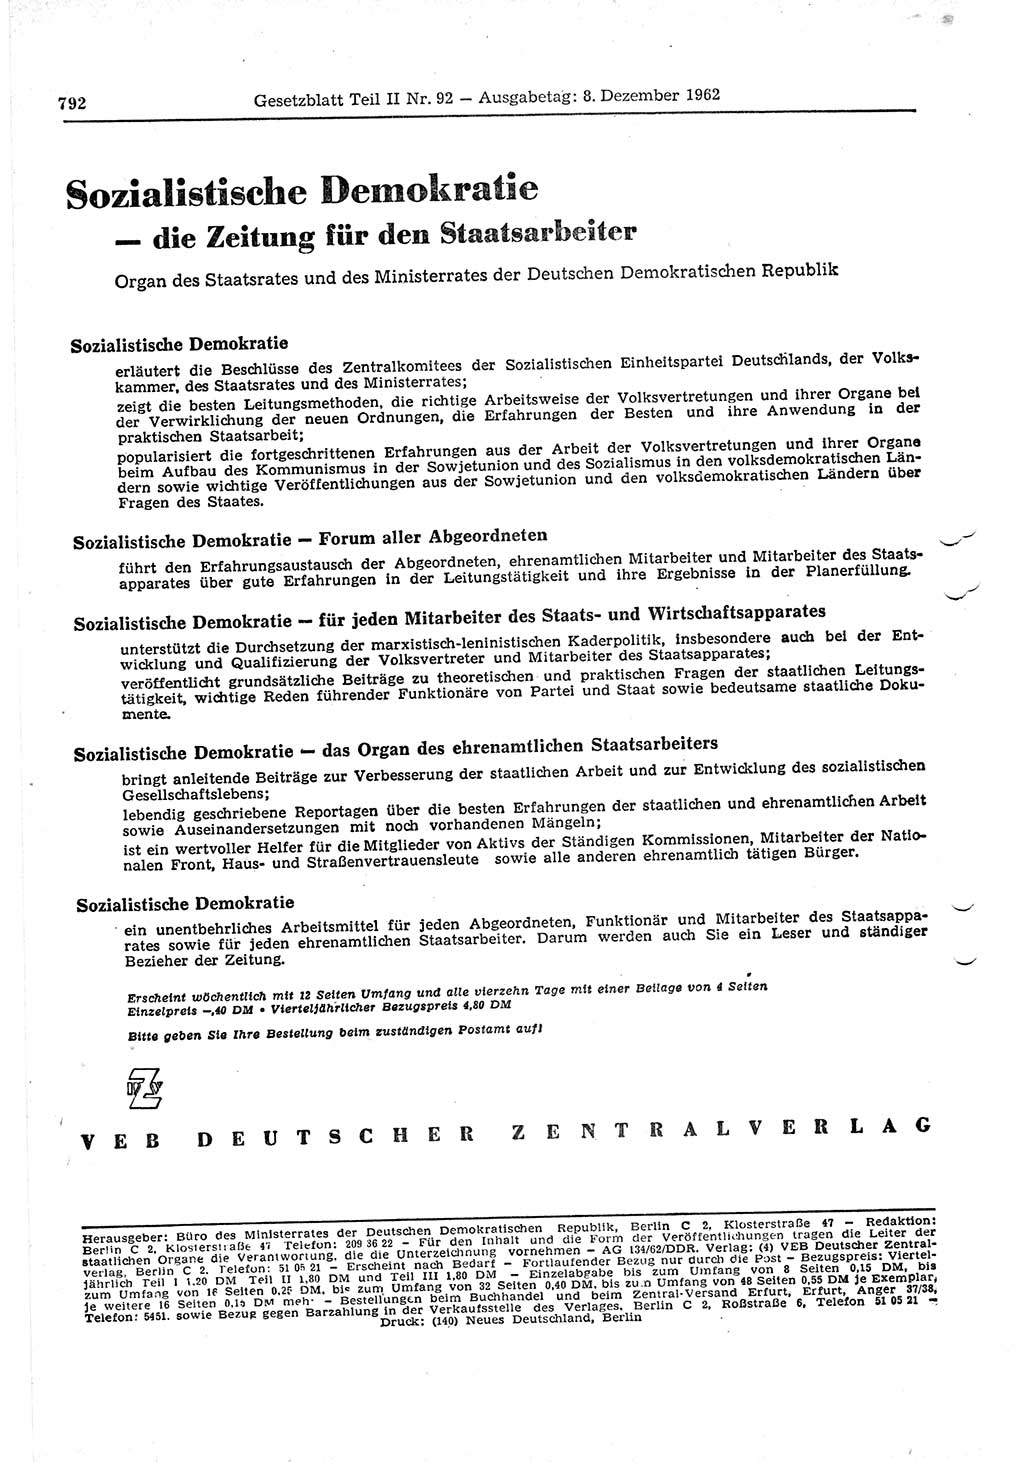 Gesetzblatt (GBl.) der Deutschen Demokratischen Republik (DDR) Teil ⅠⅠ 1962, Seite 792 (GBl. DDR ⅠⅠ 1962, S. 792)